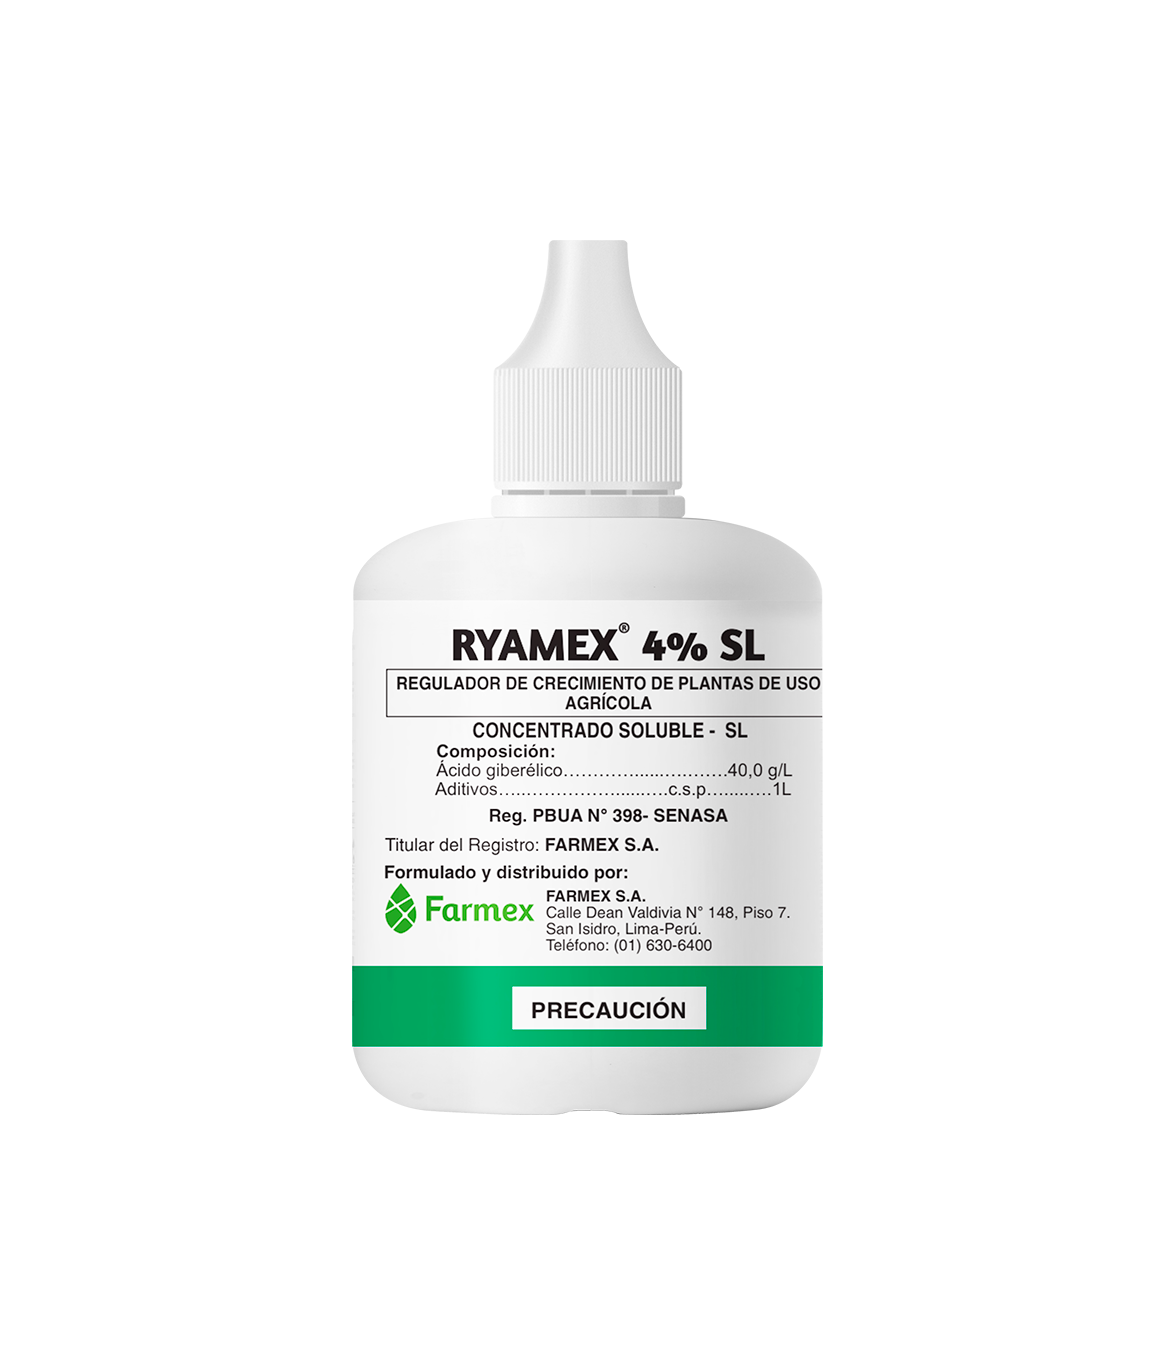 Ryamex 4% SL